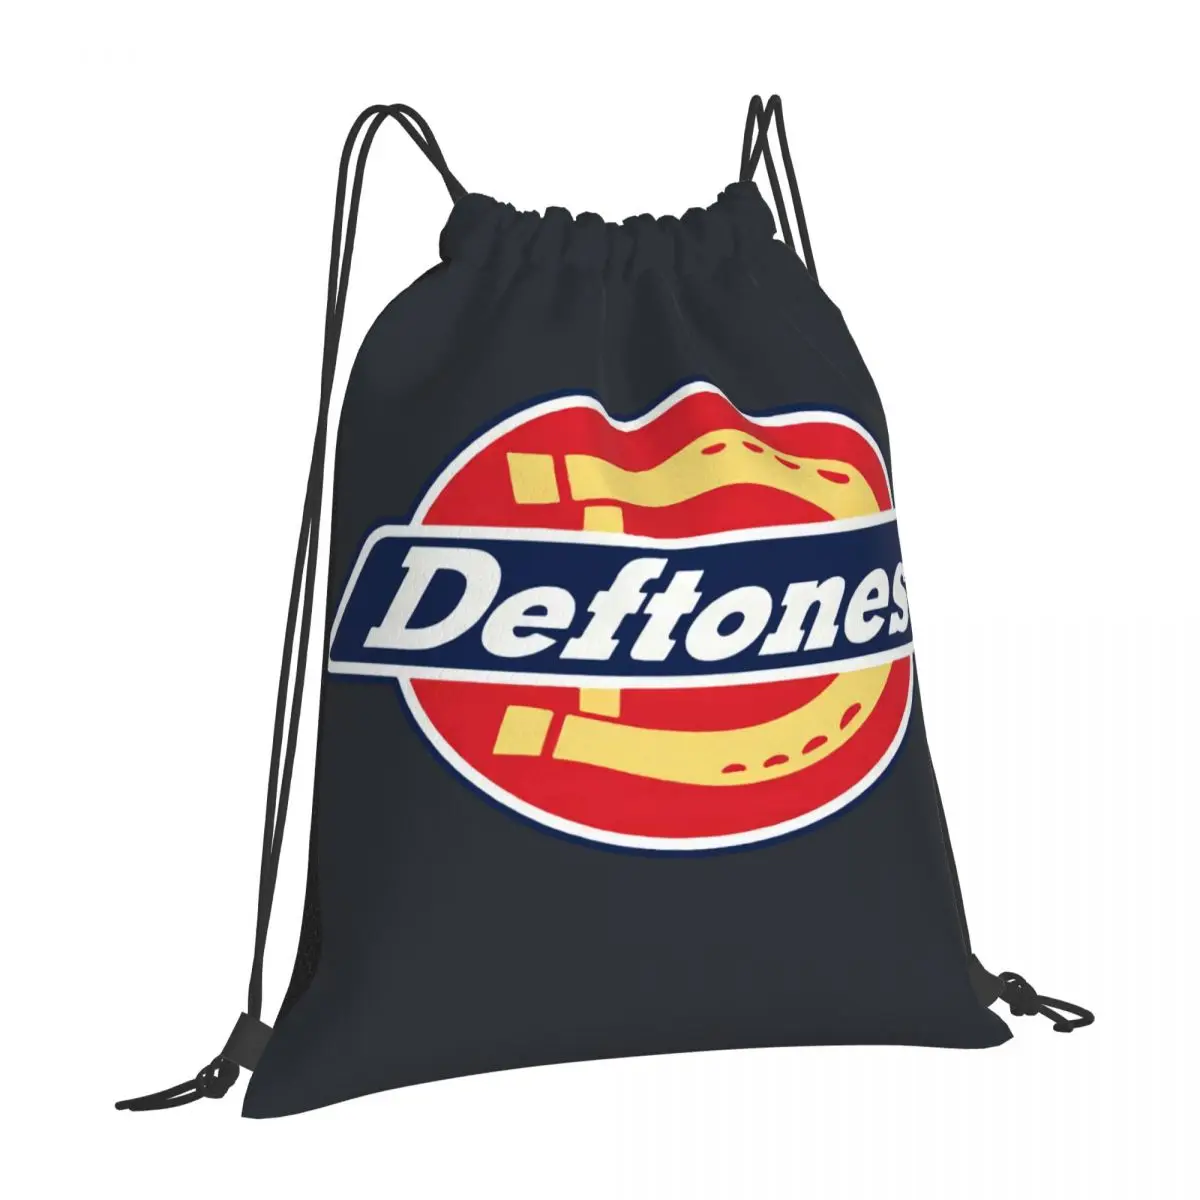 656 специальная сумка на шнурке Deftones 100, рюкзаки, детская сумка, мужская сумка, складной спортивный рюкзак для тренажерного зала